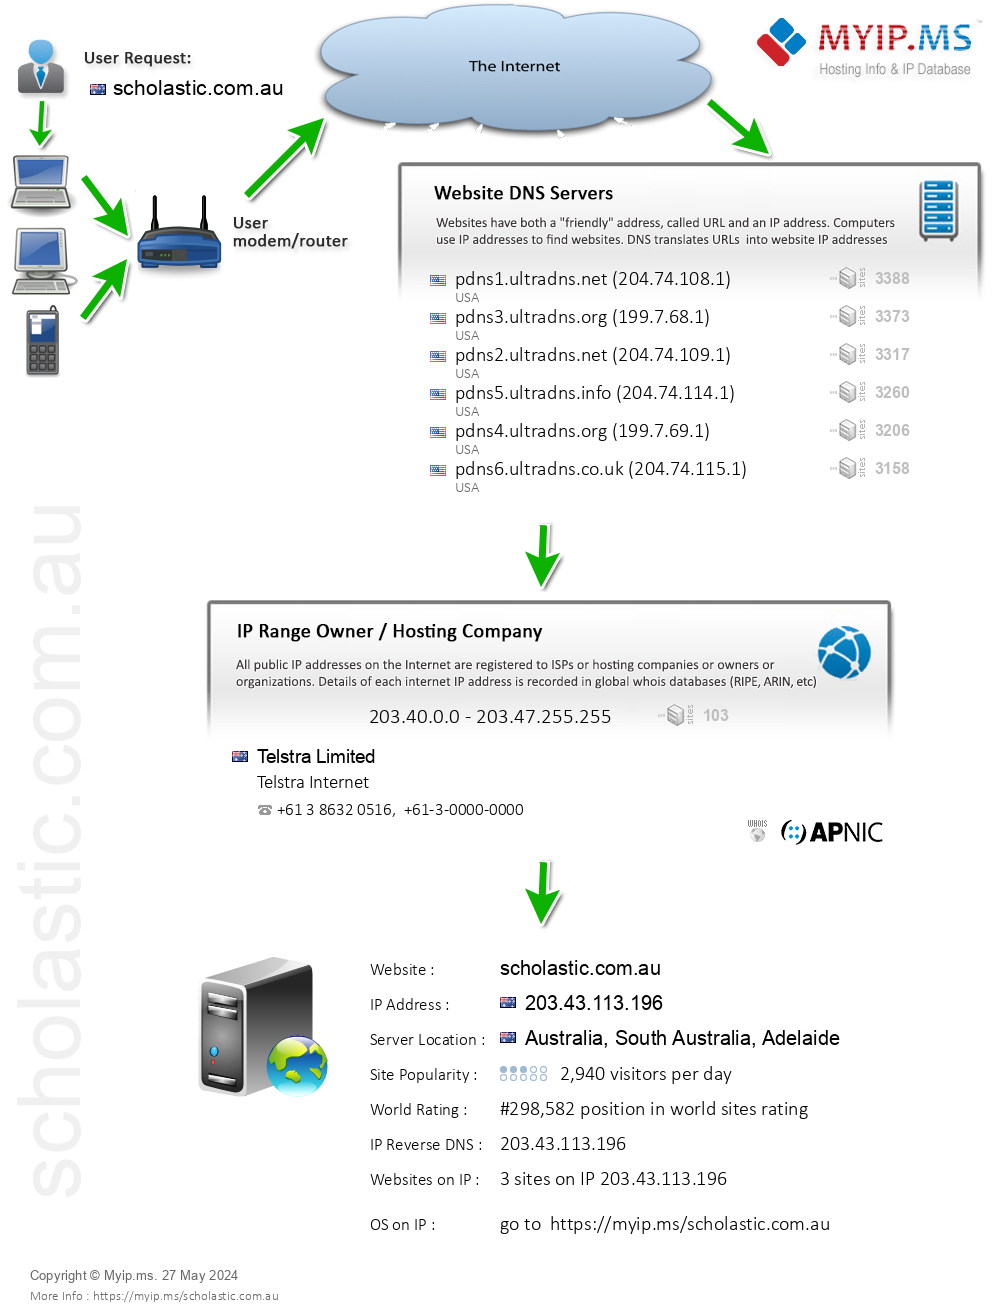 Scholastic.com.au - Website Hosting Visual IP Diagram